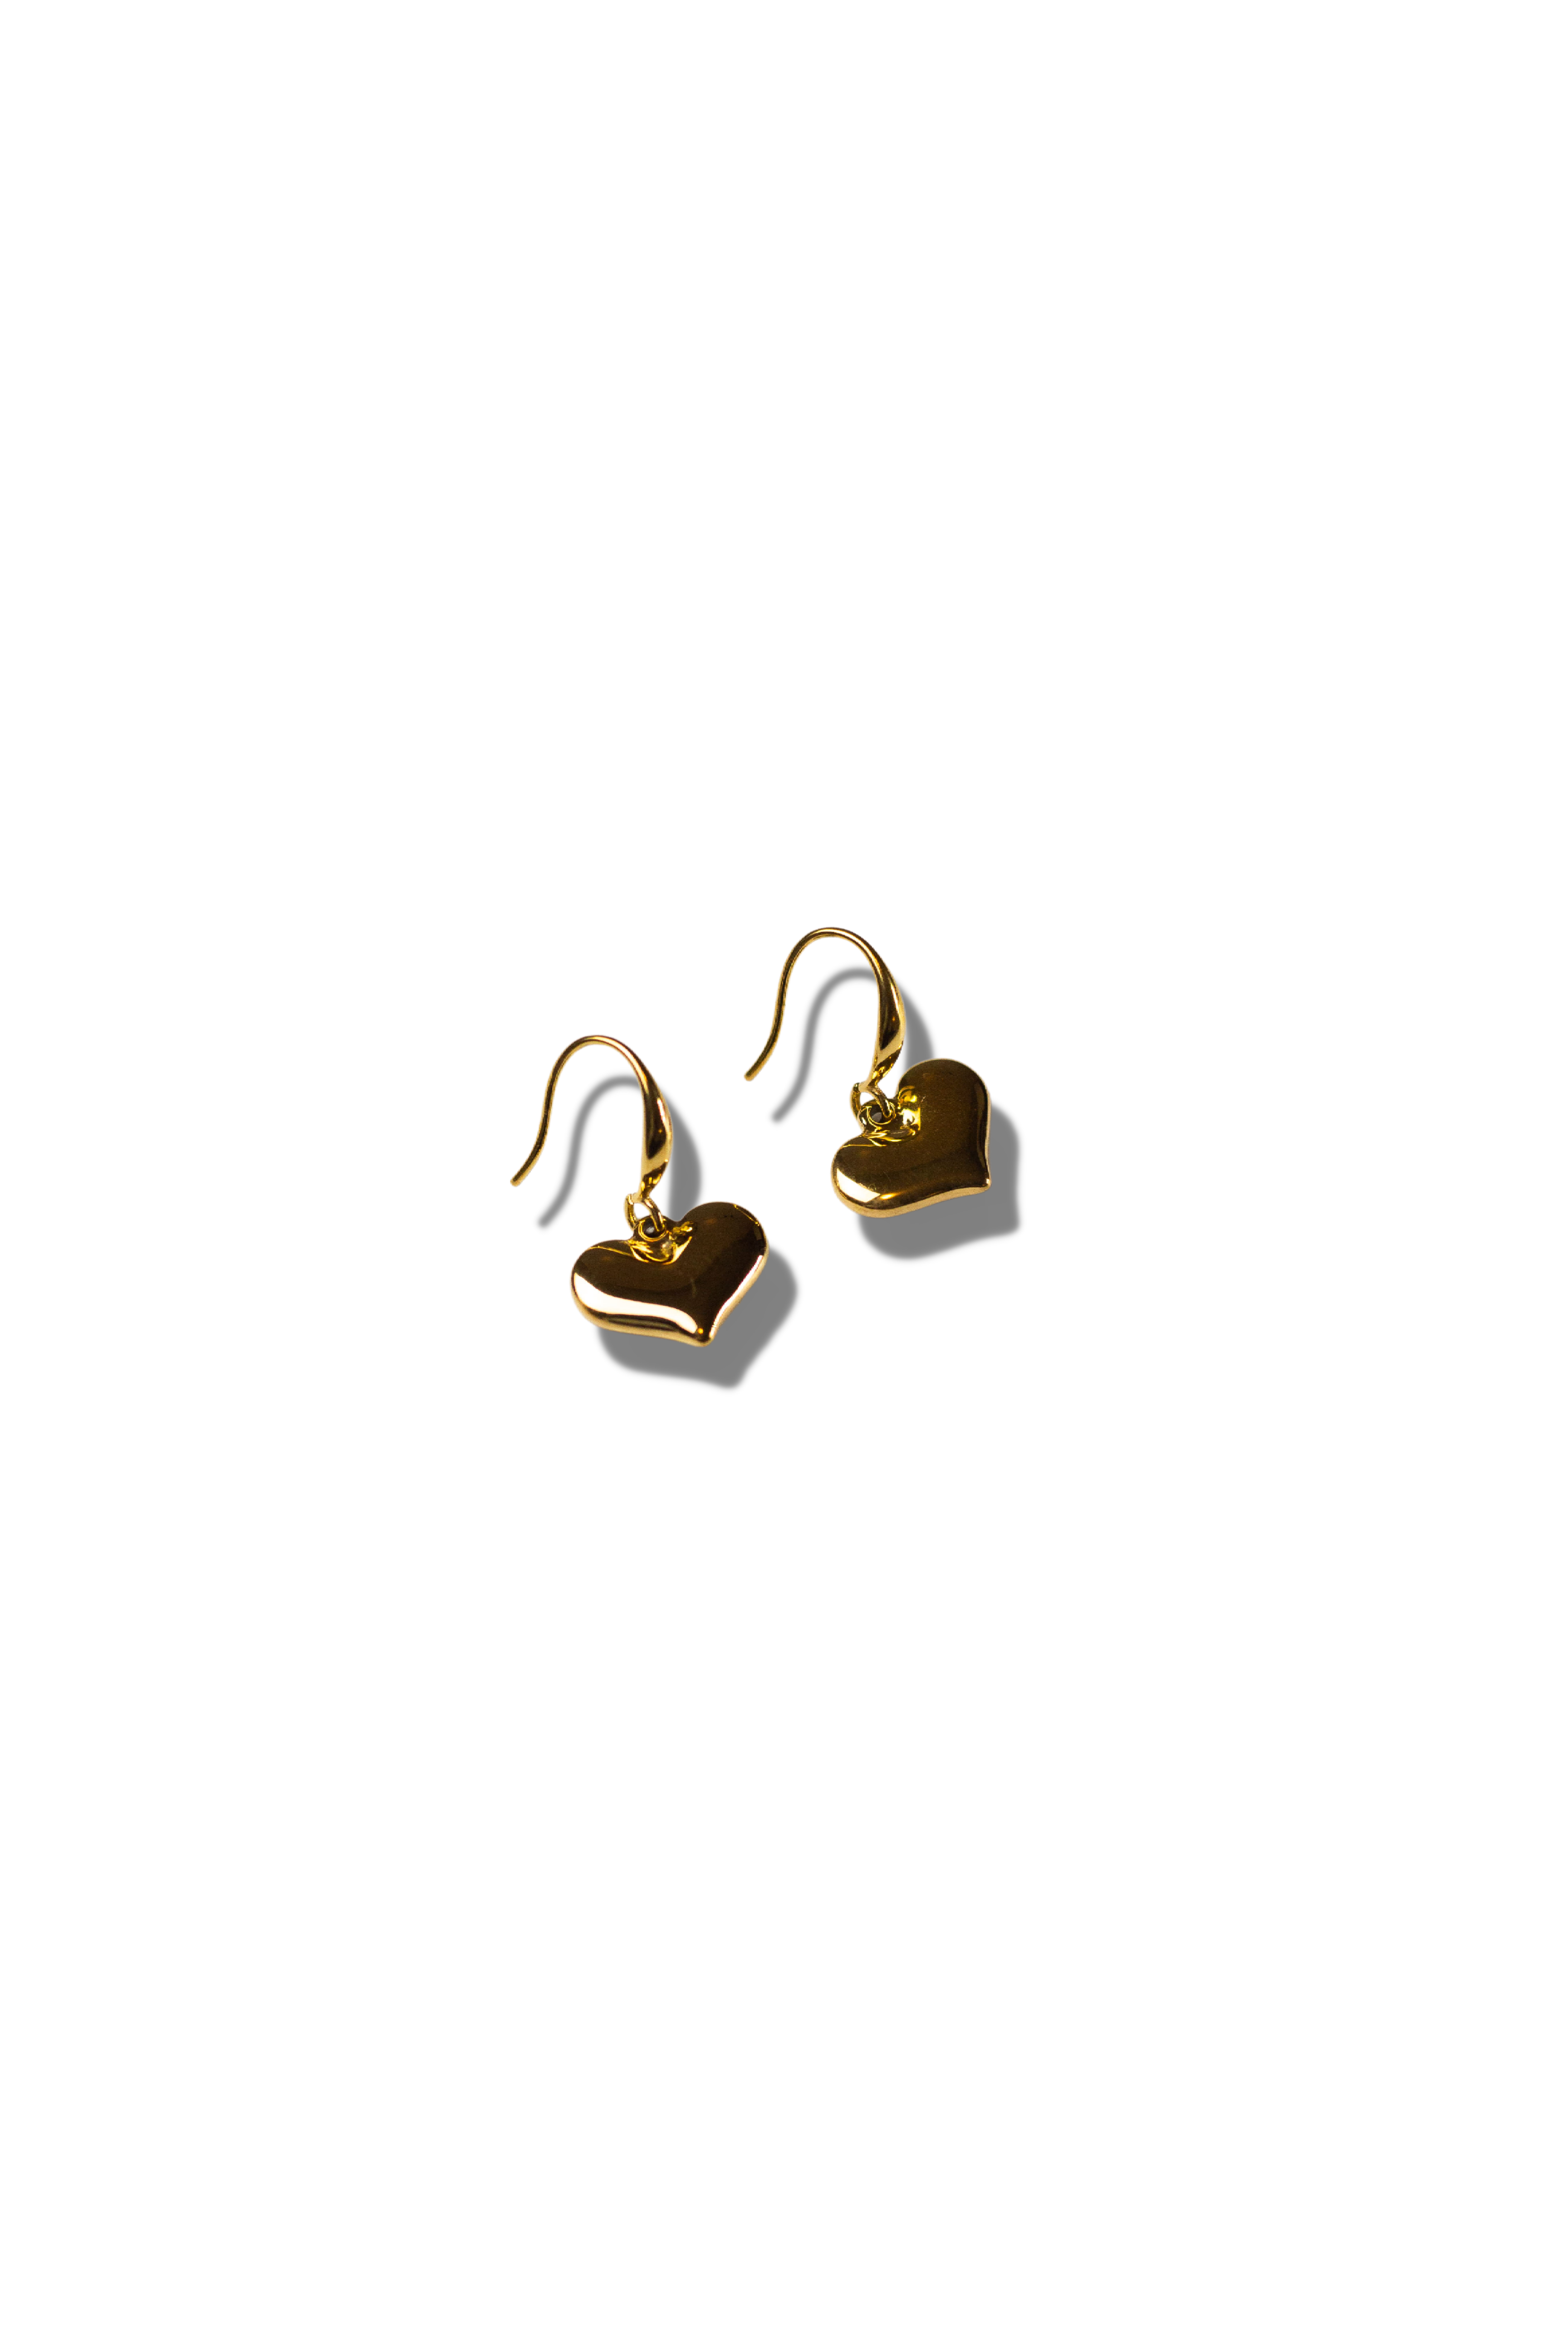 18k gold solid heart drop earrings. Ella Drop Hook Heart Earring by E's Element.